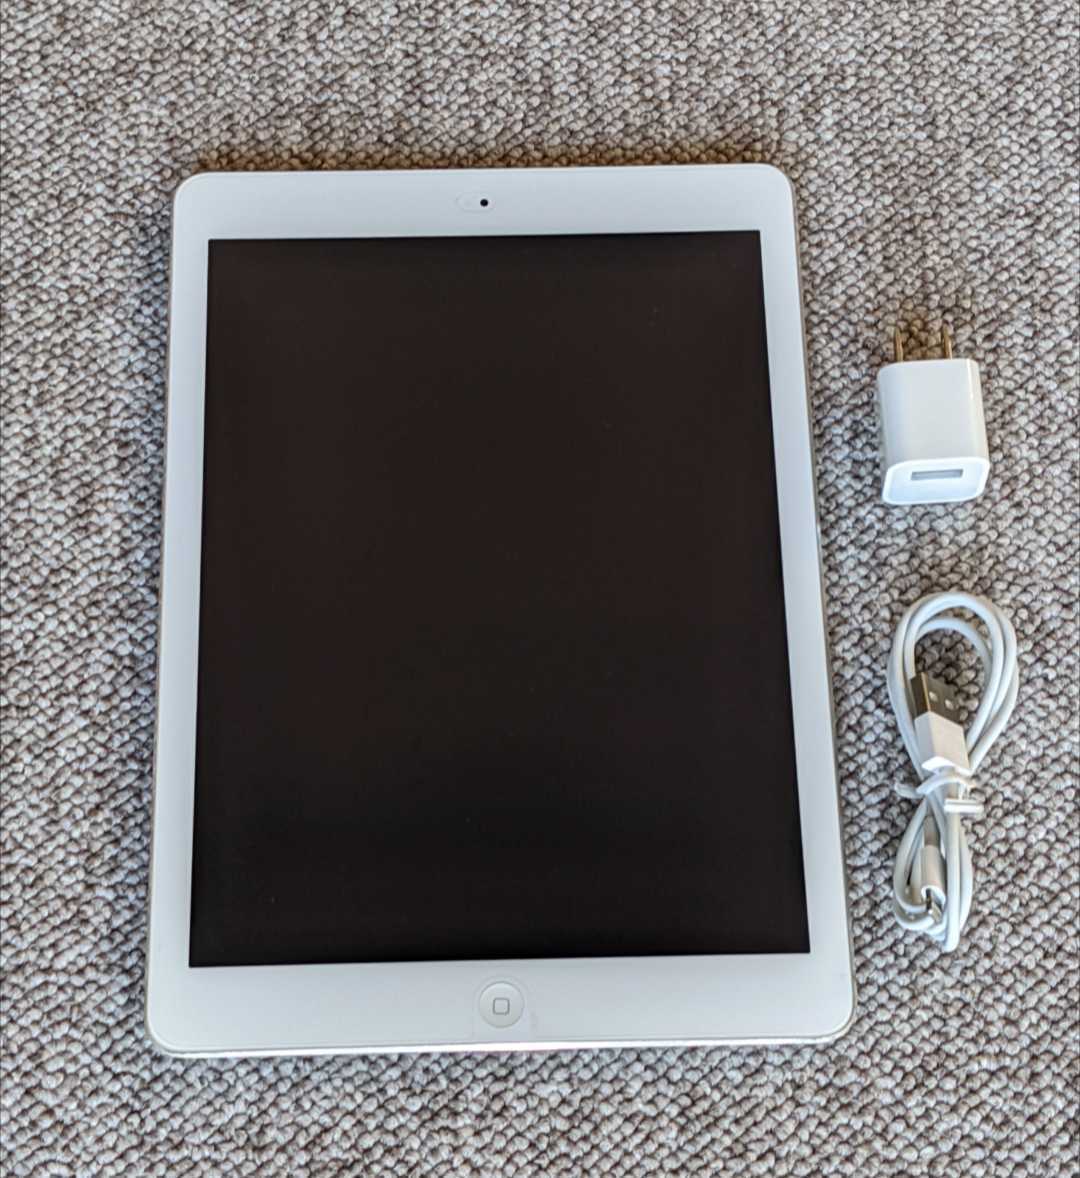 期間限定】【半額以下】 iPad Air 9.7インチ Wifiモデル A1474 16GB:手数料安い